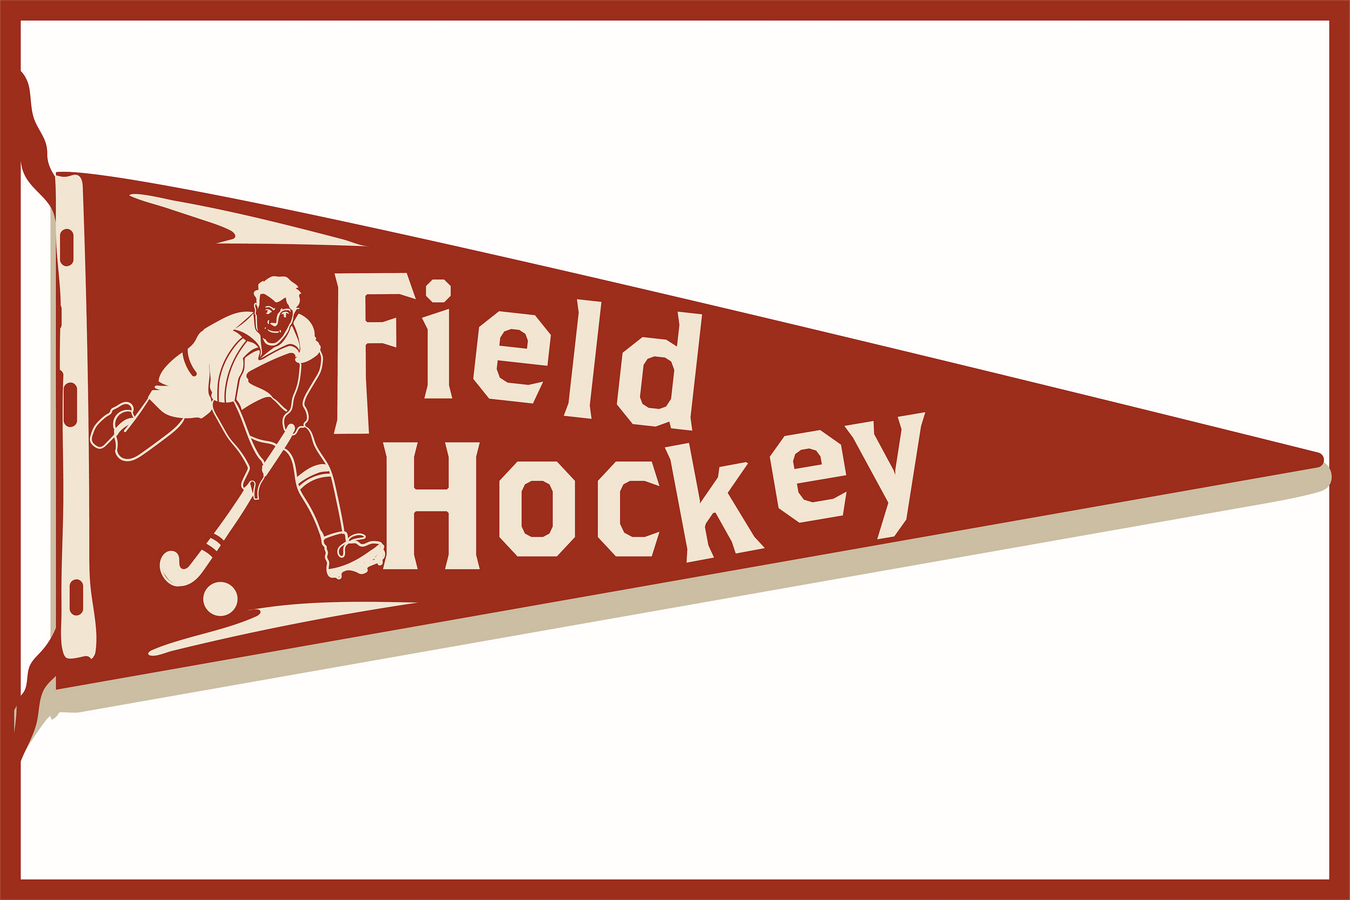 Field Hockey